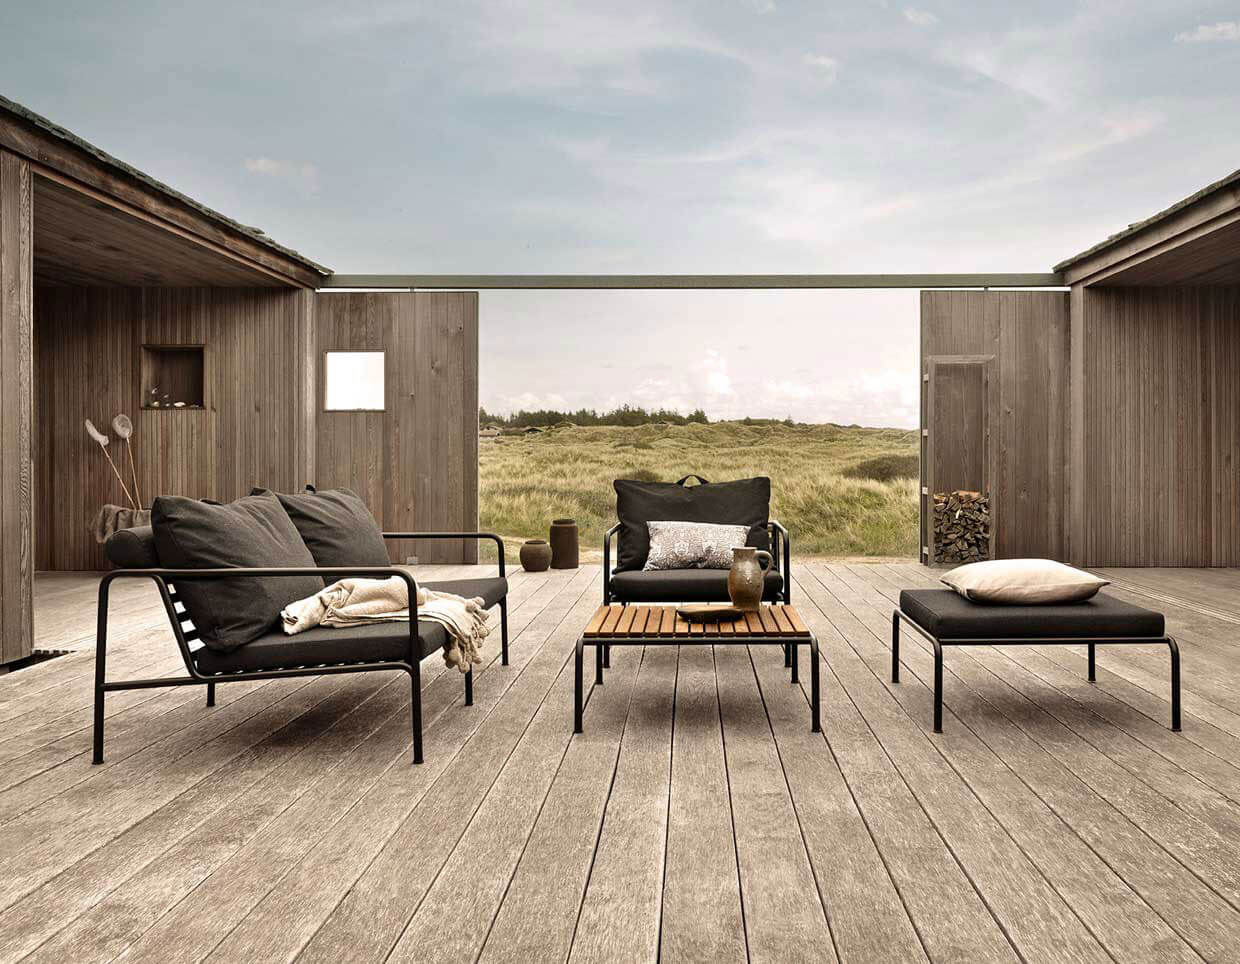 Ferienhaus mit Holzterasse und Houe Avon Lounge Möbeln, Ausblic auf die grünen Wiesen